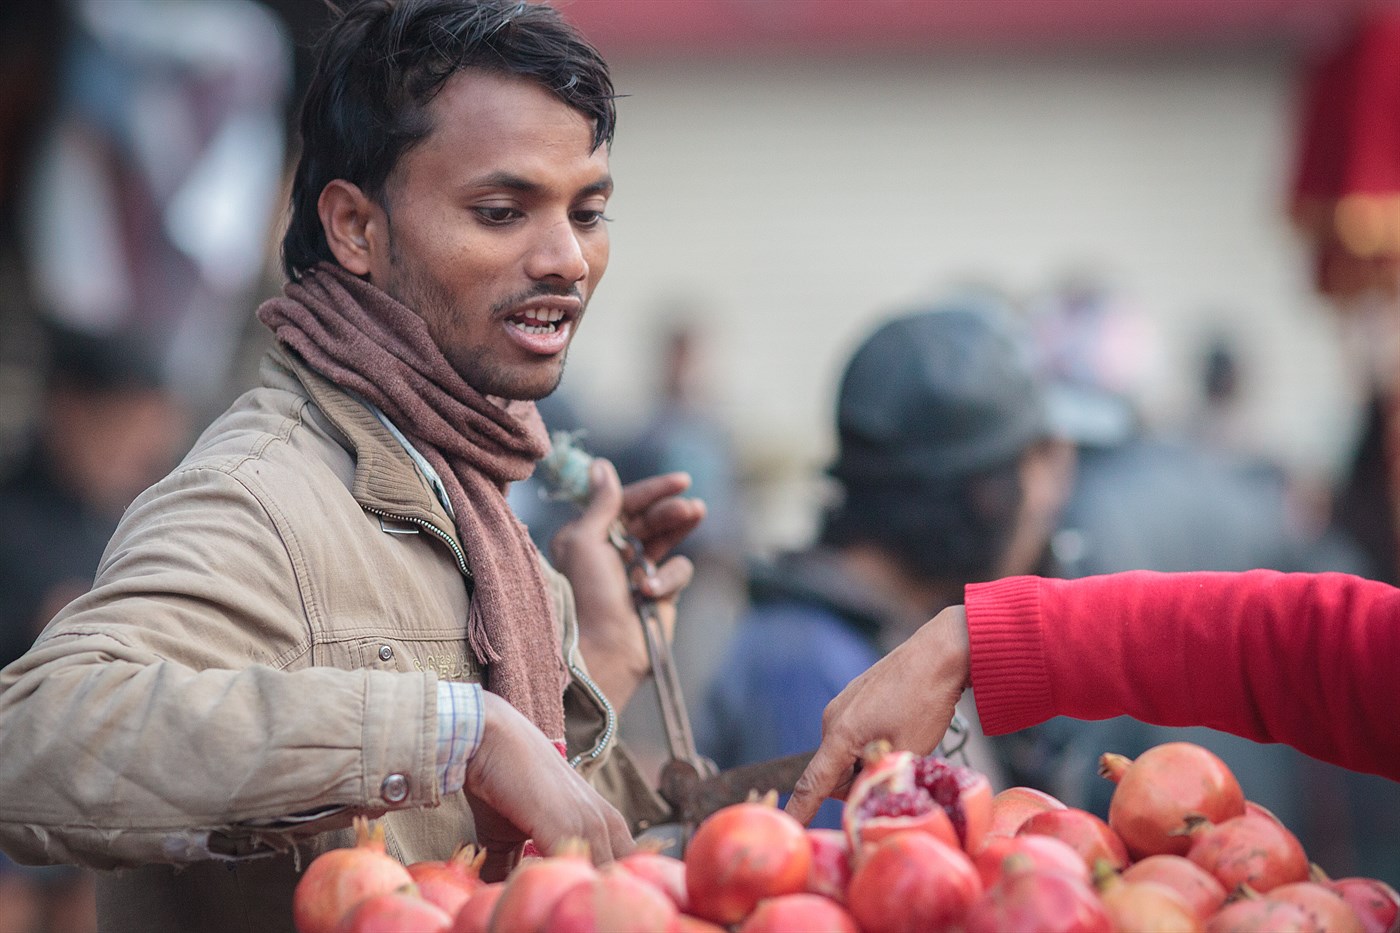 Market In Kathmandu, photo